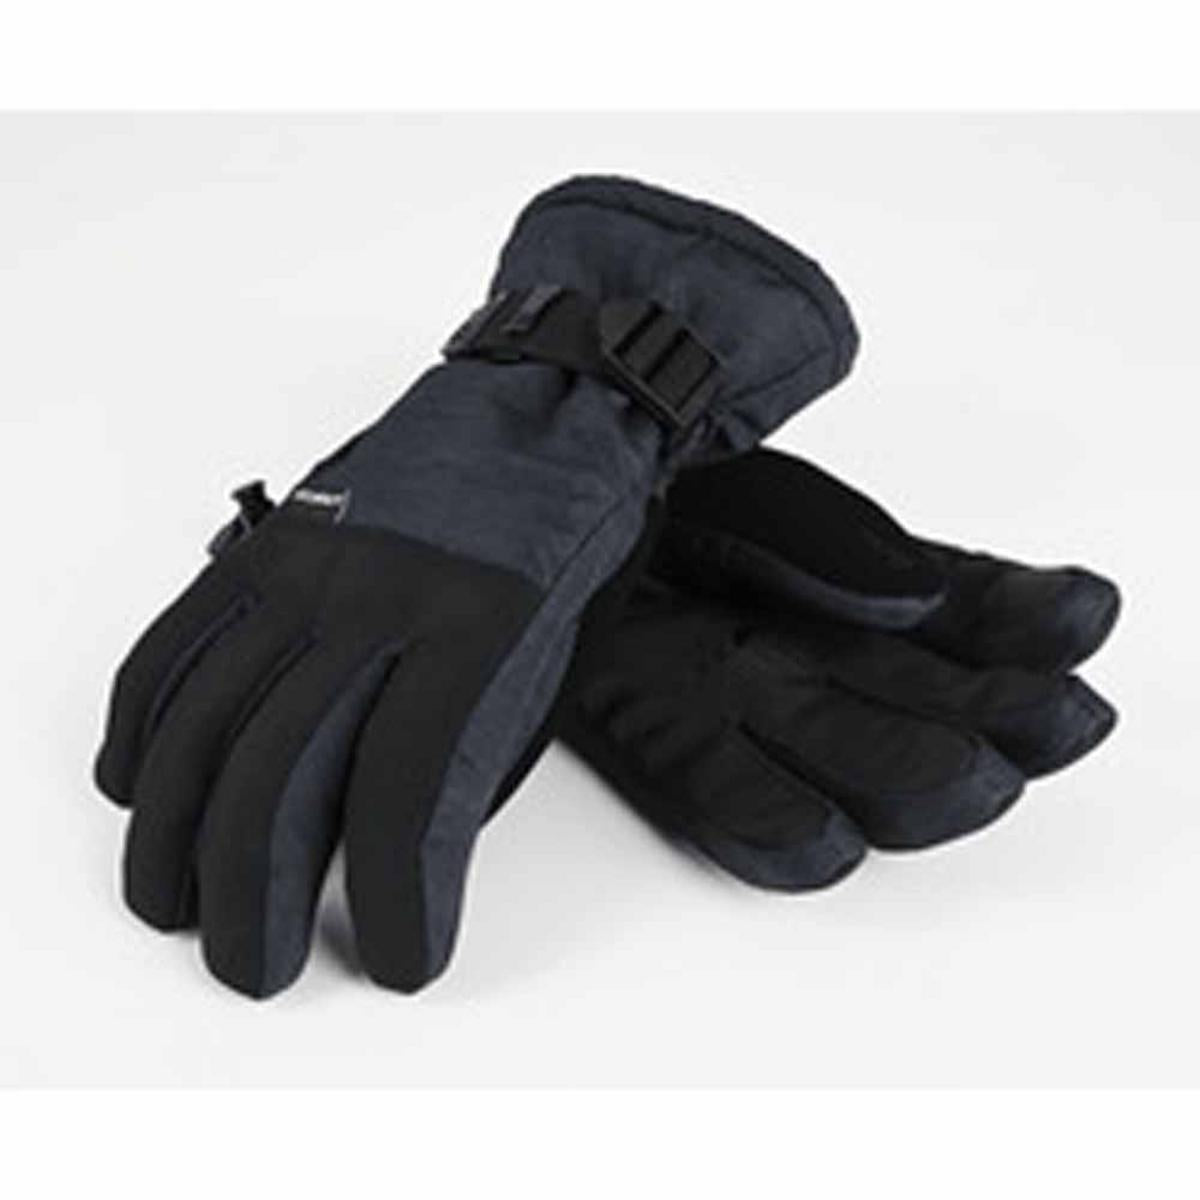 Seirus Men's Heatwave Crest Gloves